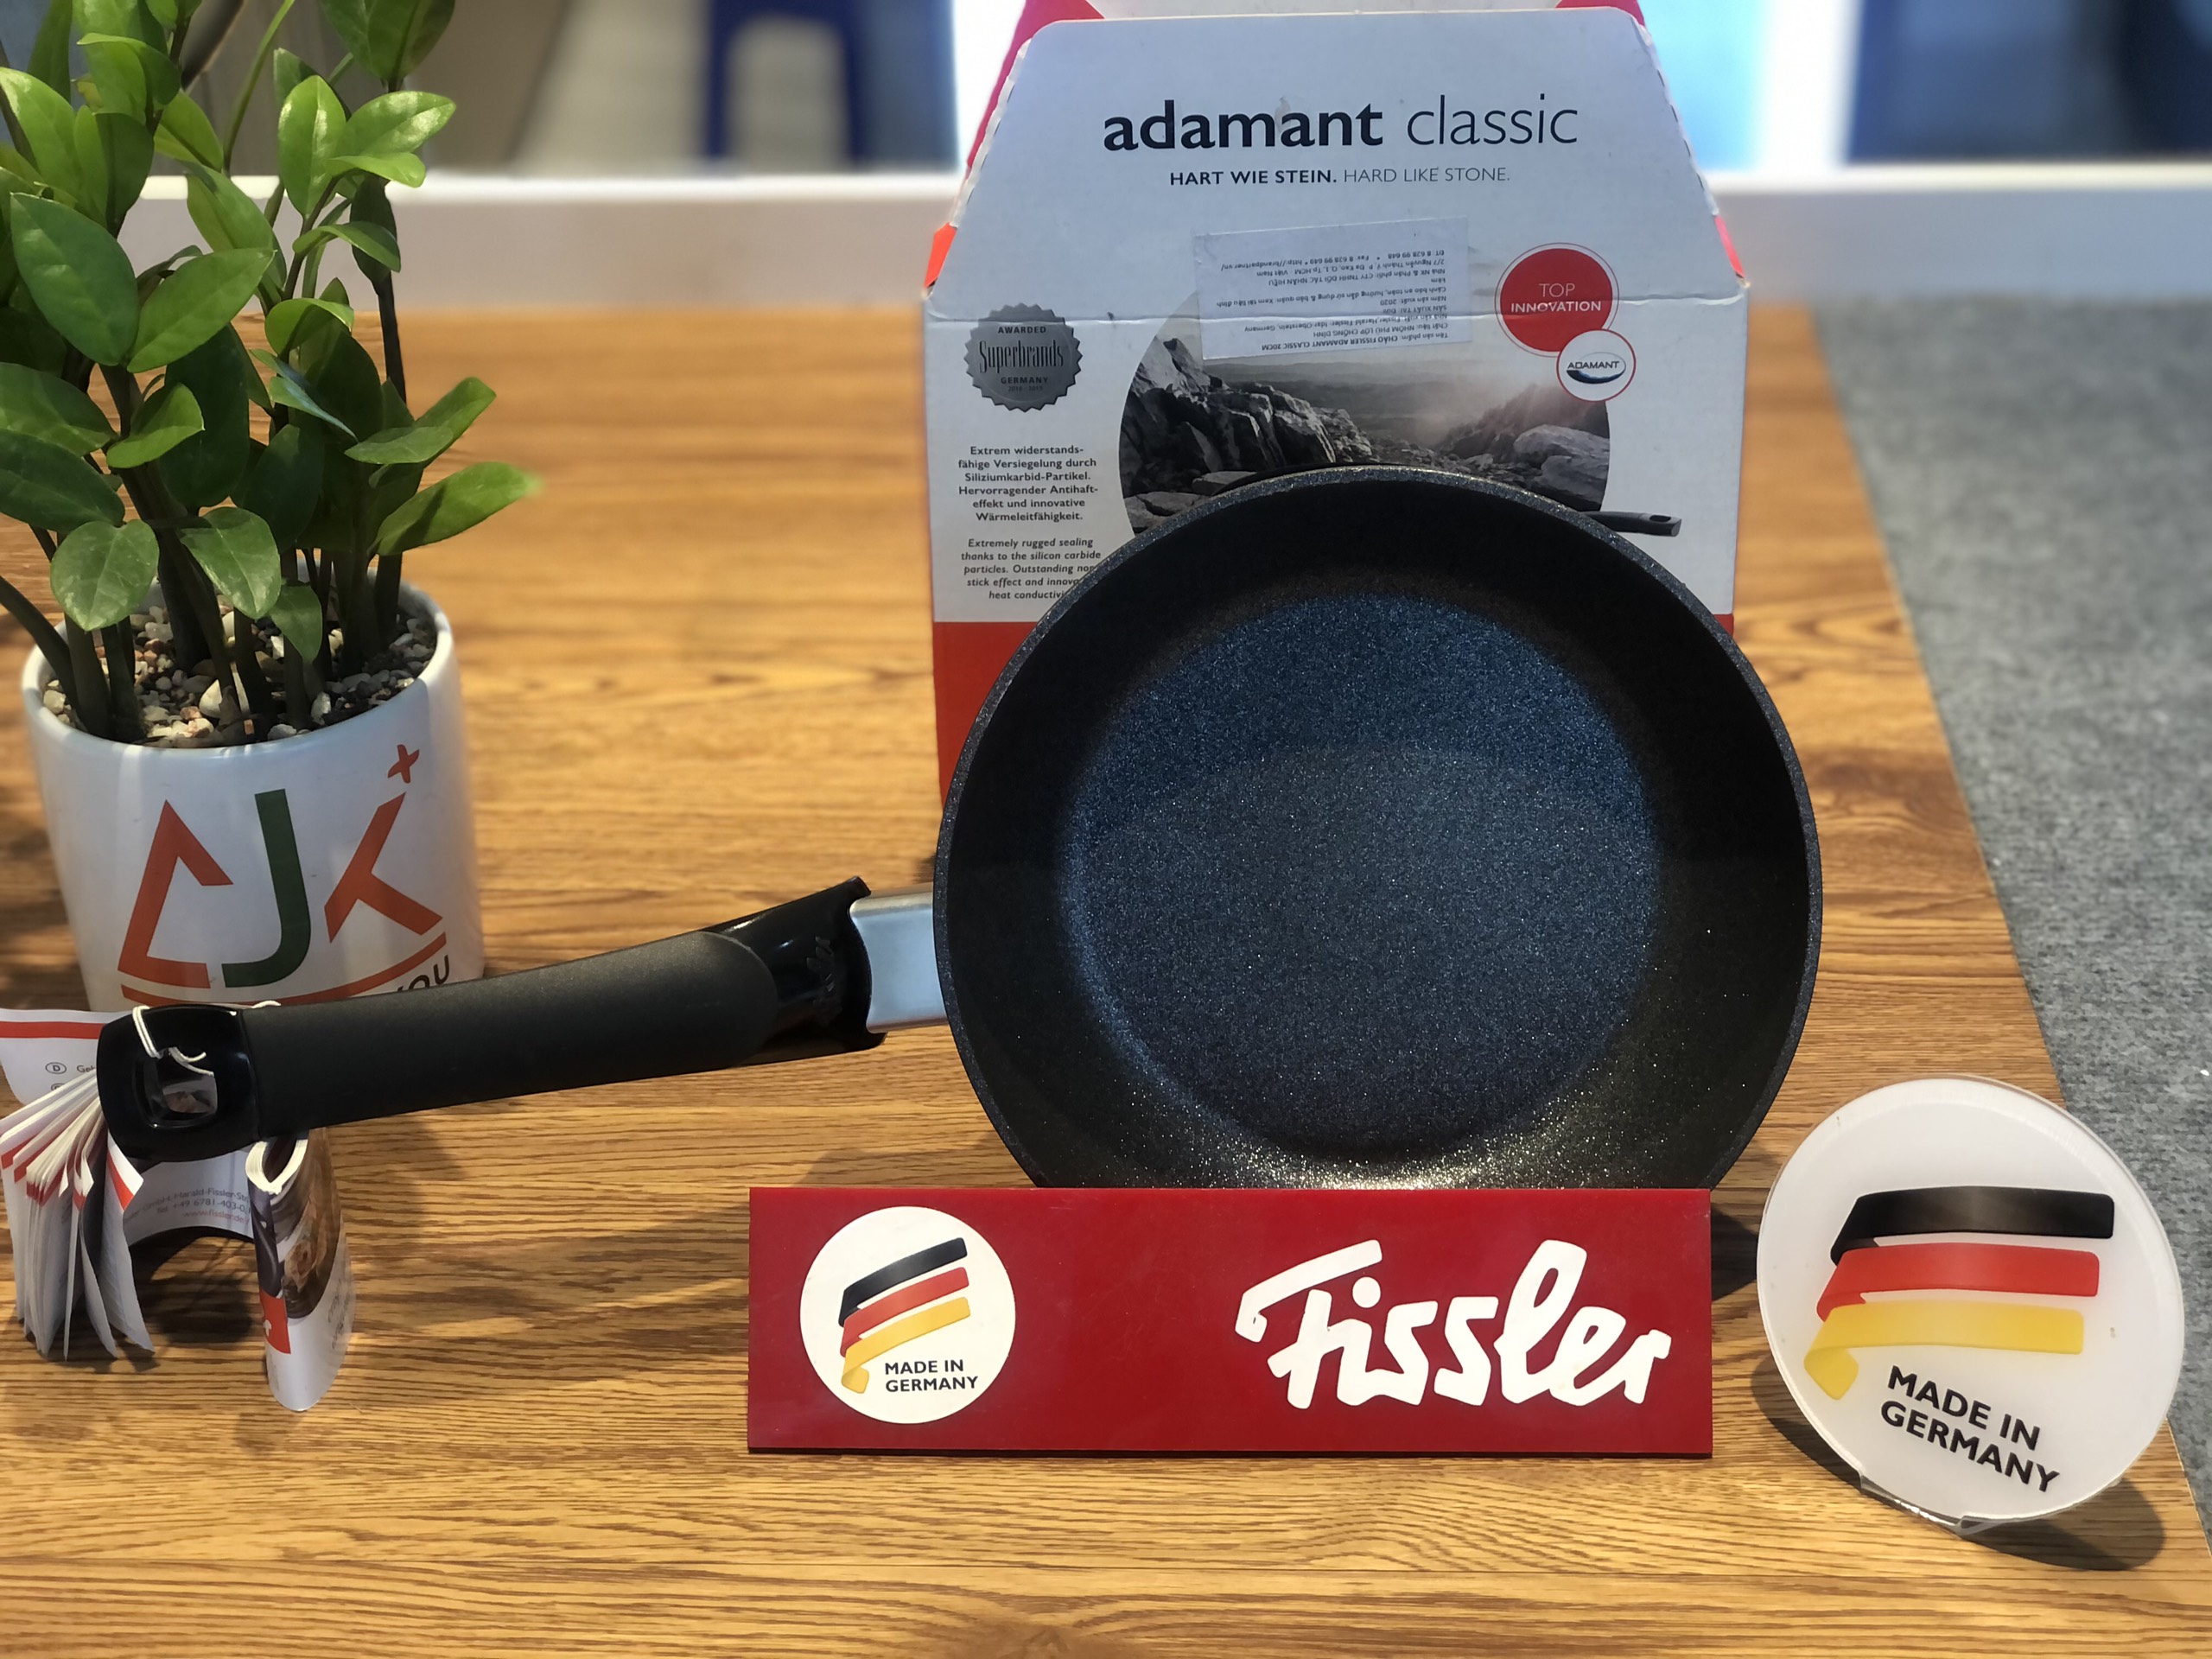 Chảo chống dính Fissler Adamant Classic size 28cm - Sx tại Đức - Hàng chính hãng